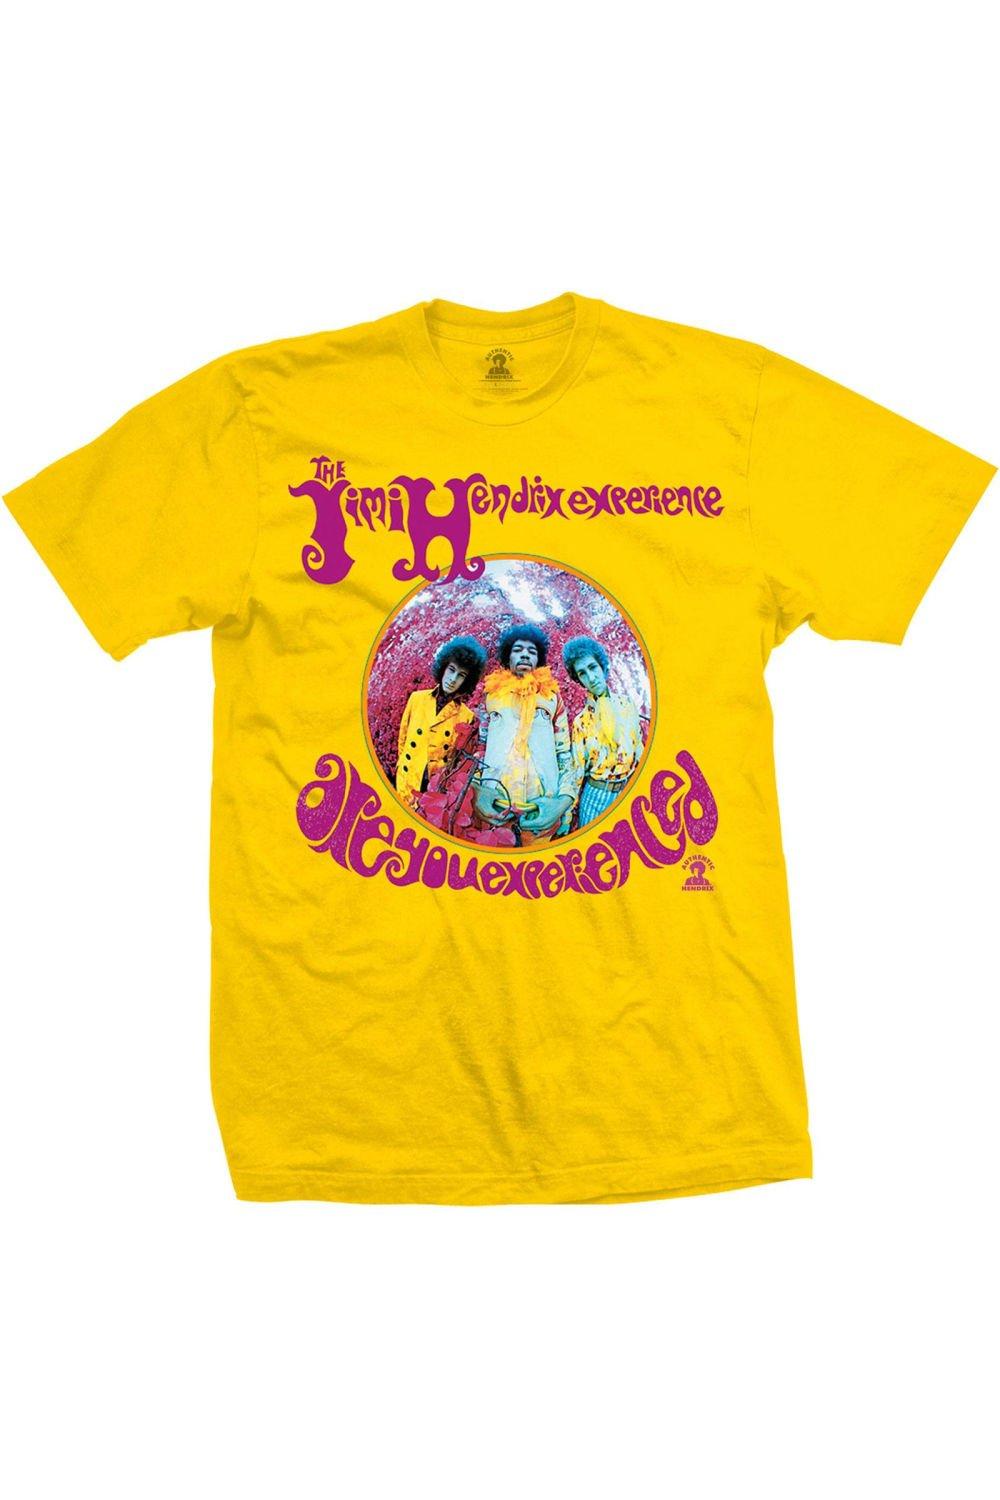 футболка вы опытный jimi hendrix темно синий Футболка «Вы опытный» Jimi Hendrix, желтый